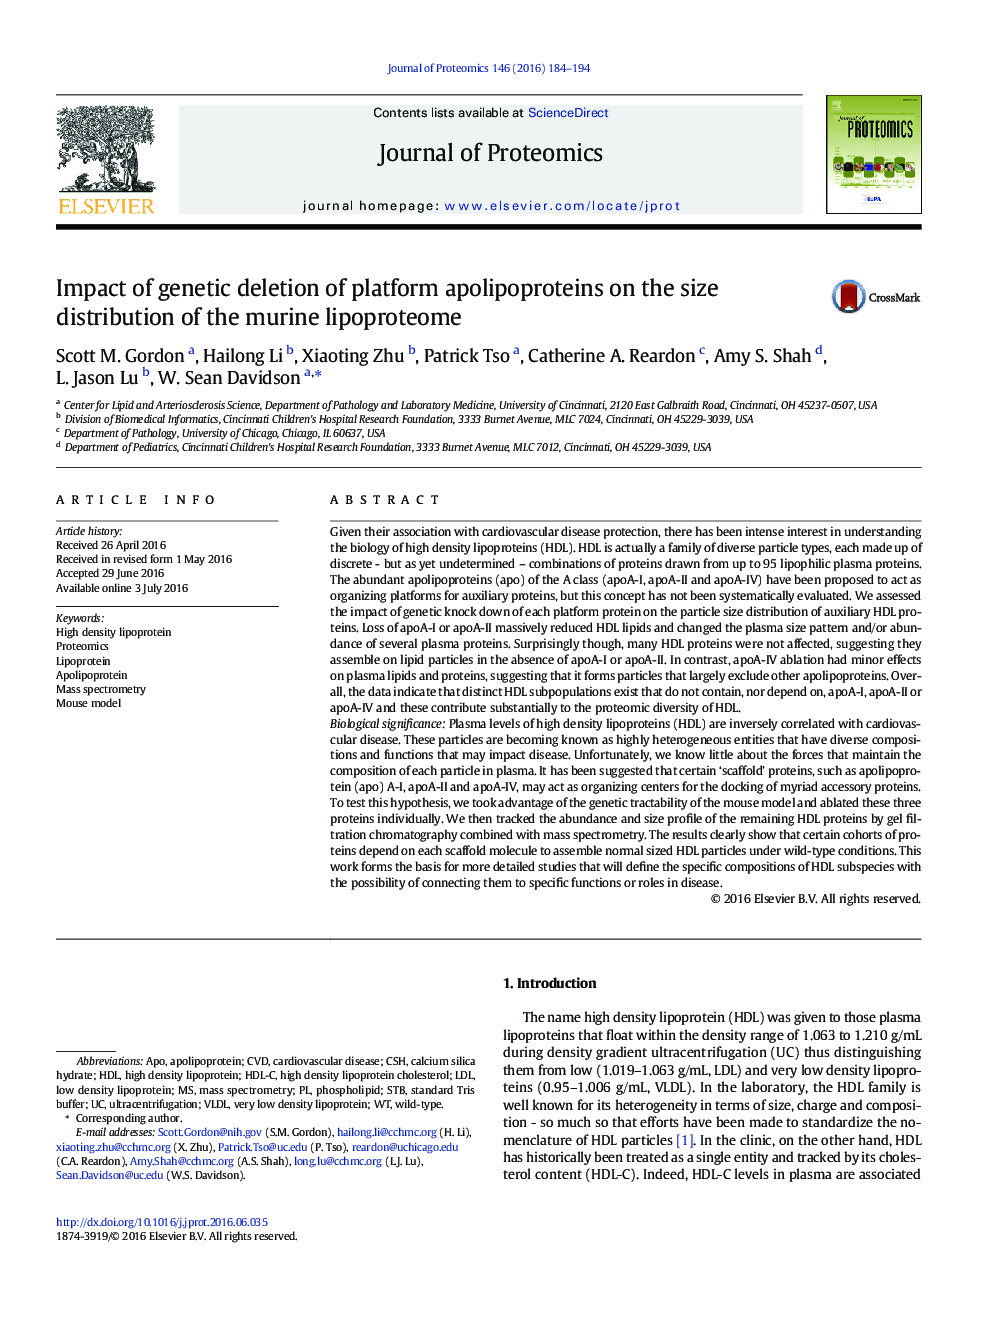 اثر حذف ژنتیکی آپولیپوپروتئین های پلت فرم بر توزیع اندازه پروتئین های چربی 